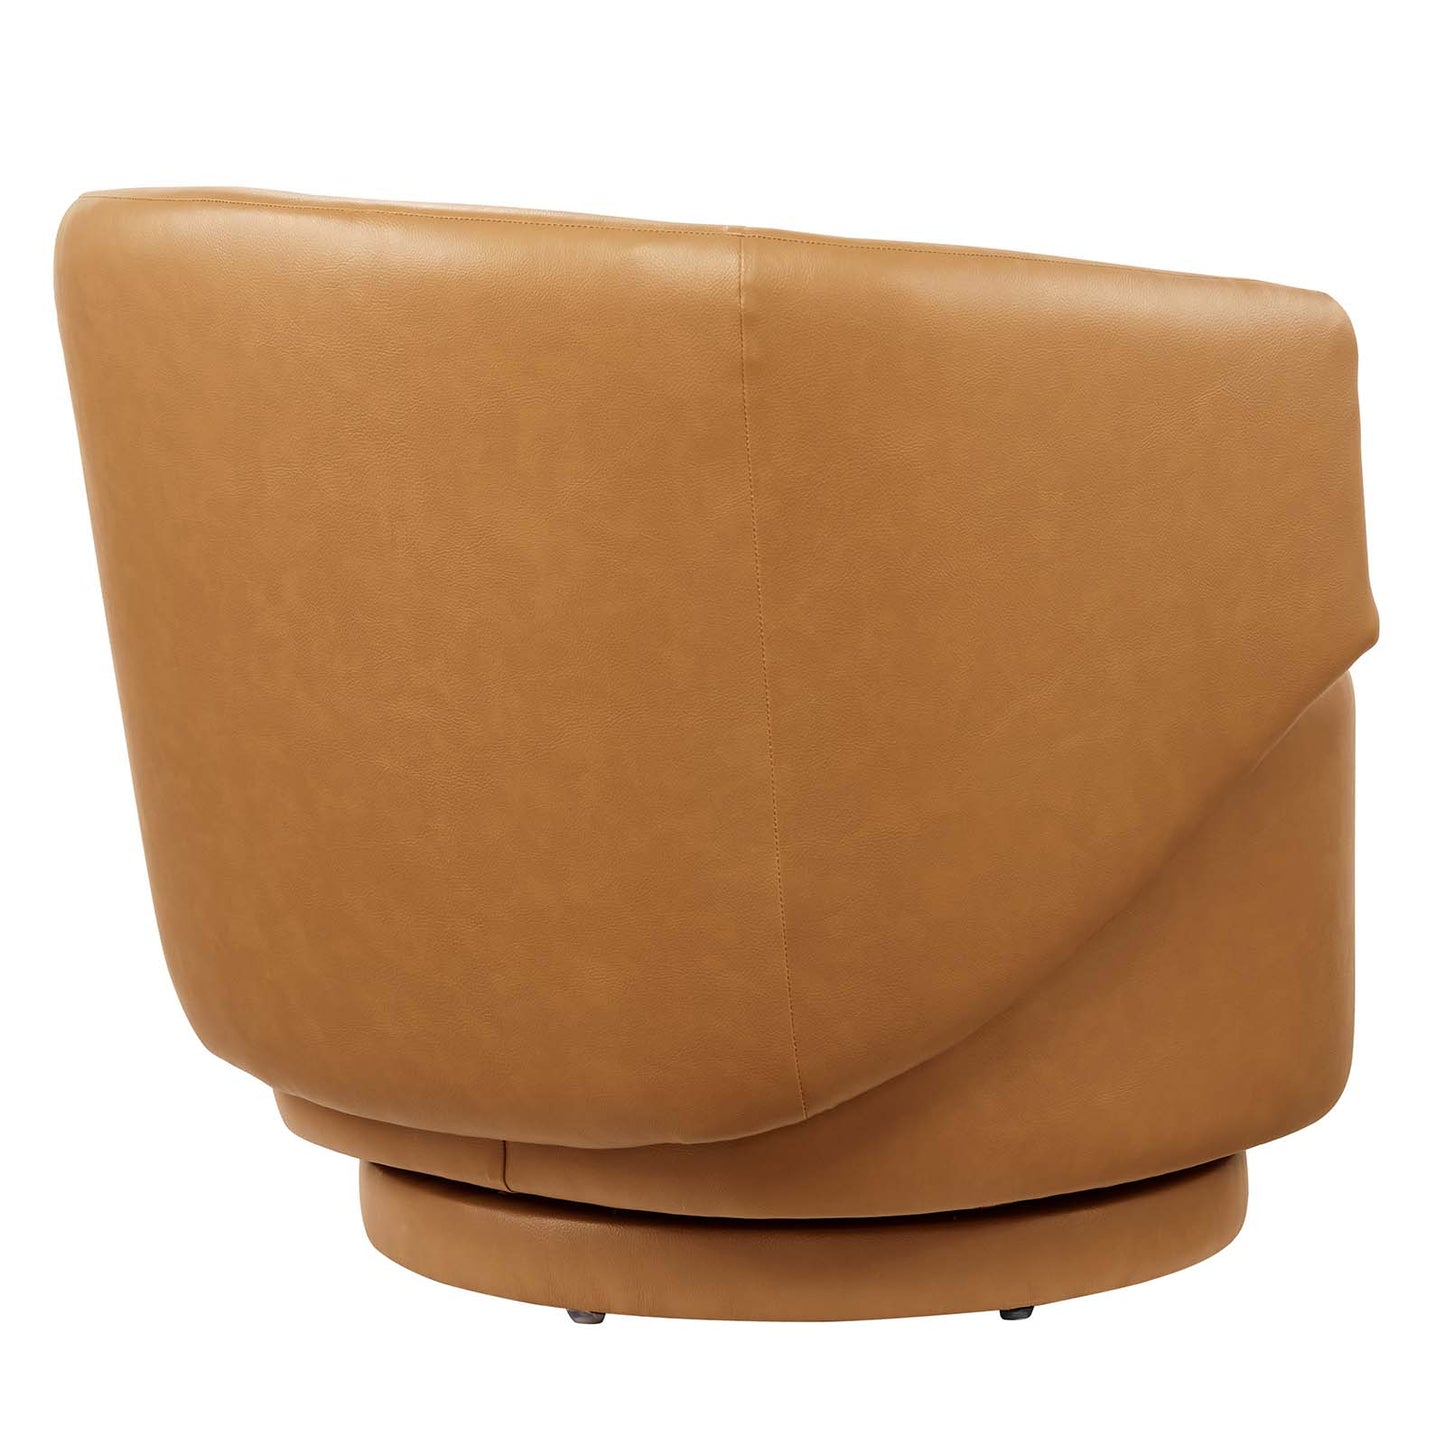 Celestia Vegan Leather Fabric and Wood Swivel Chair Tan EEI-6358-TAN